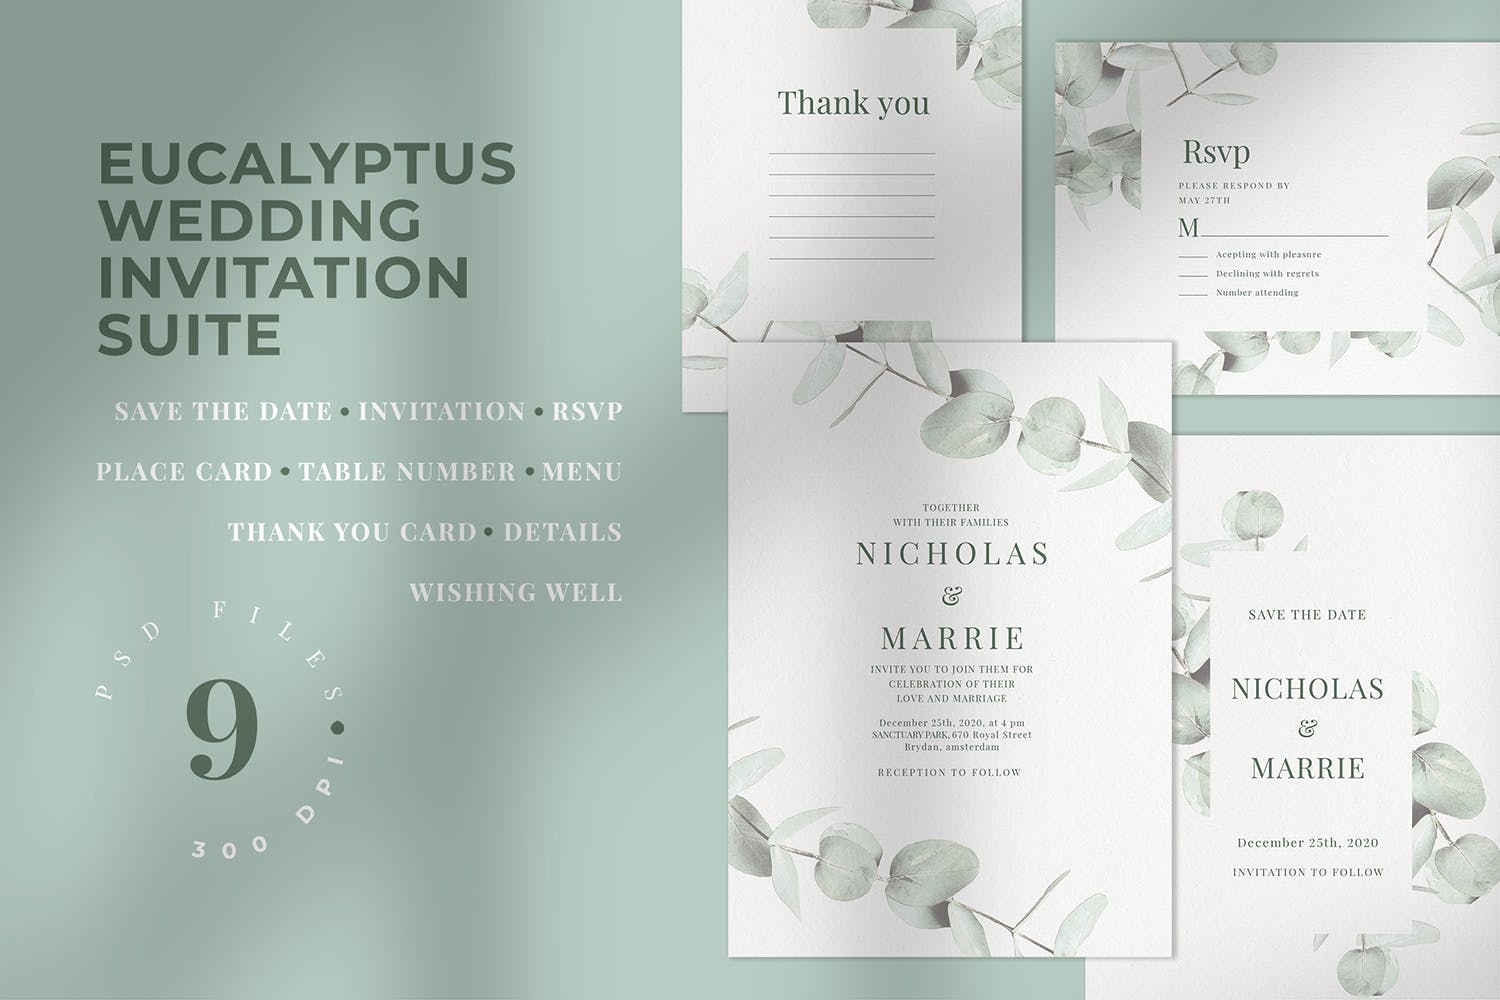 桉树装饰元素婚礼邀请设计素材包 Eucalyptus Wedding Invitation Suite插图(1)